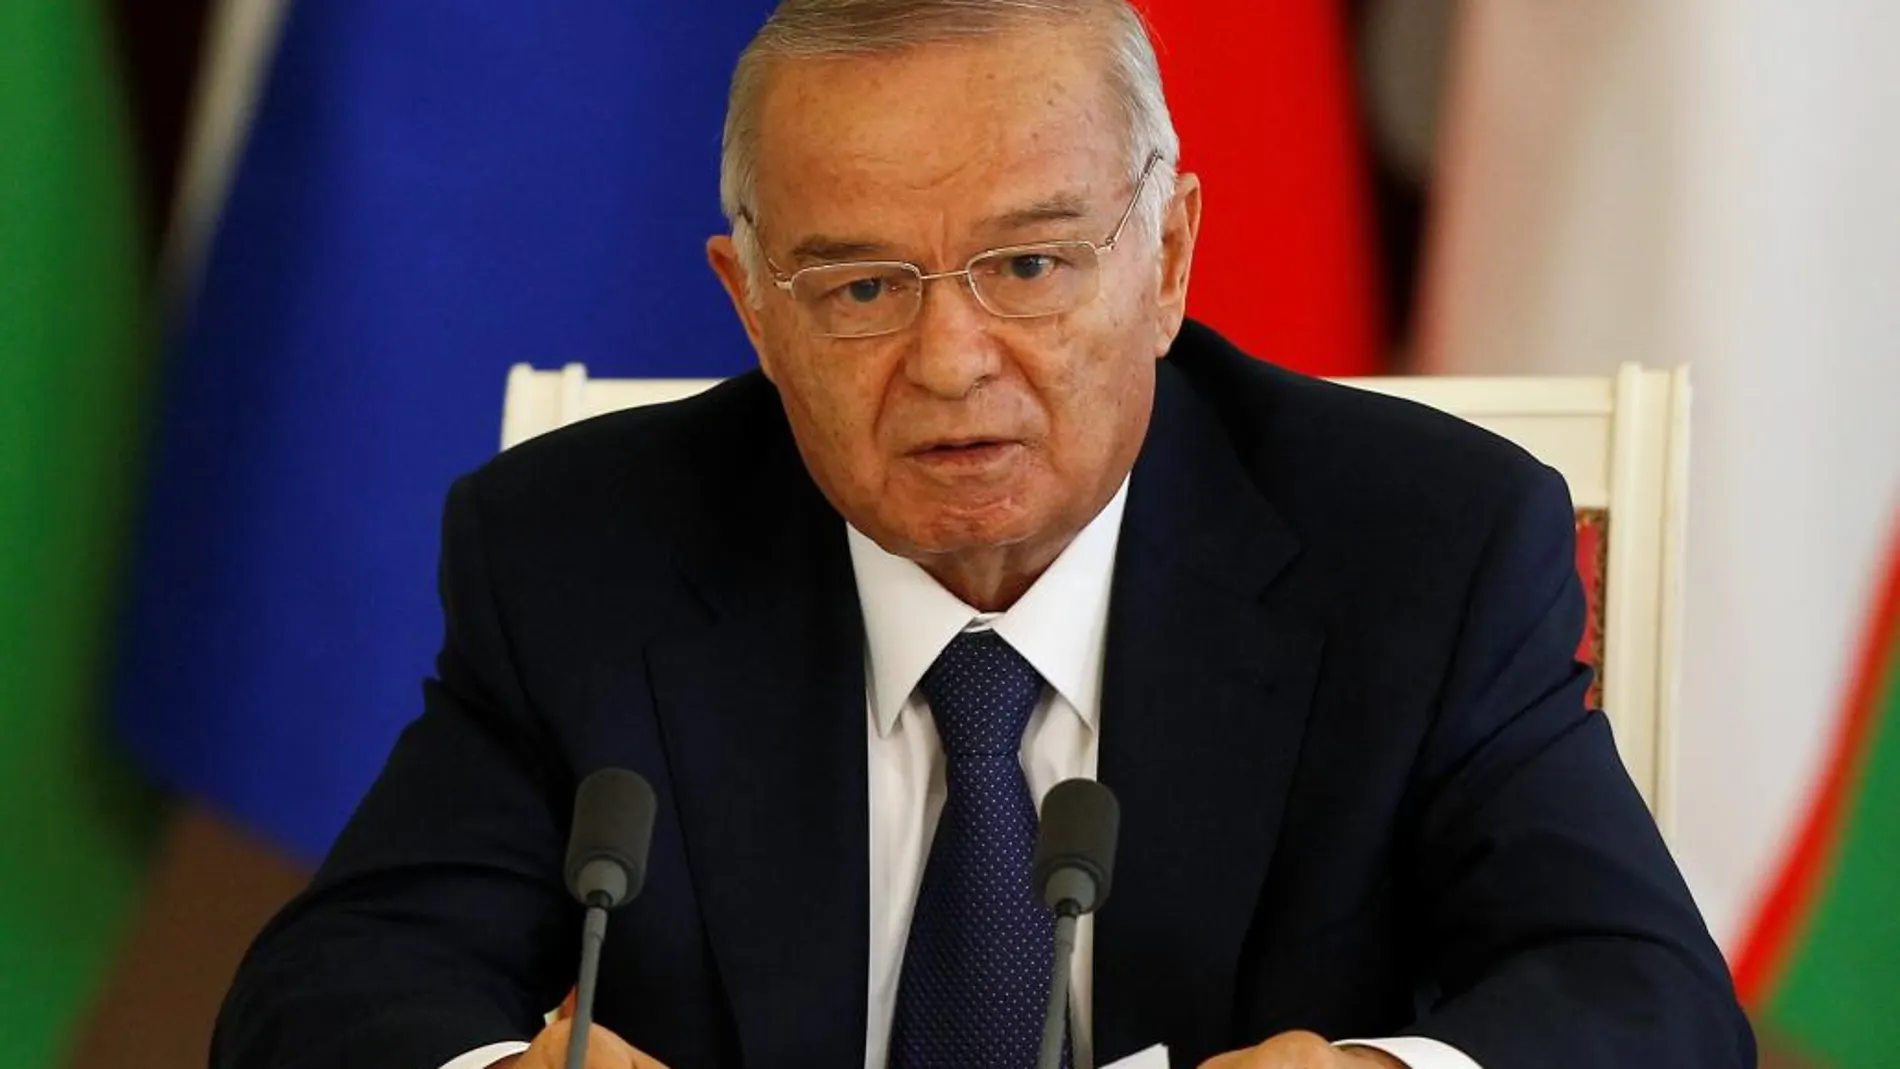 El presidente de Uzbekistán, Islam Karimov